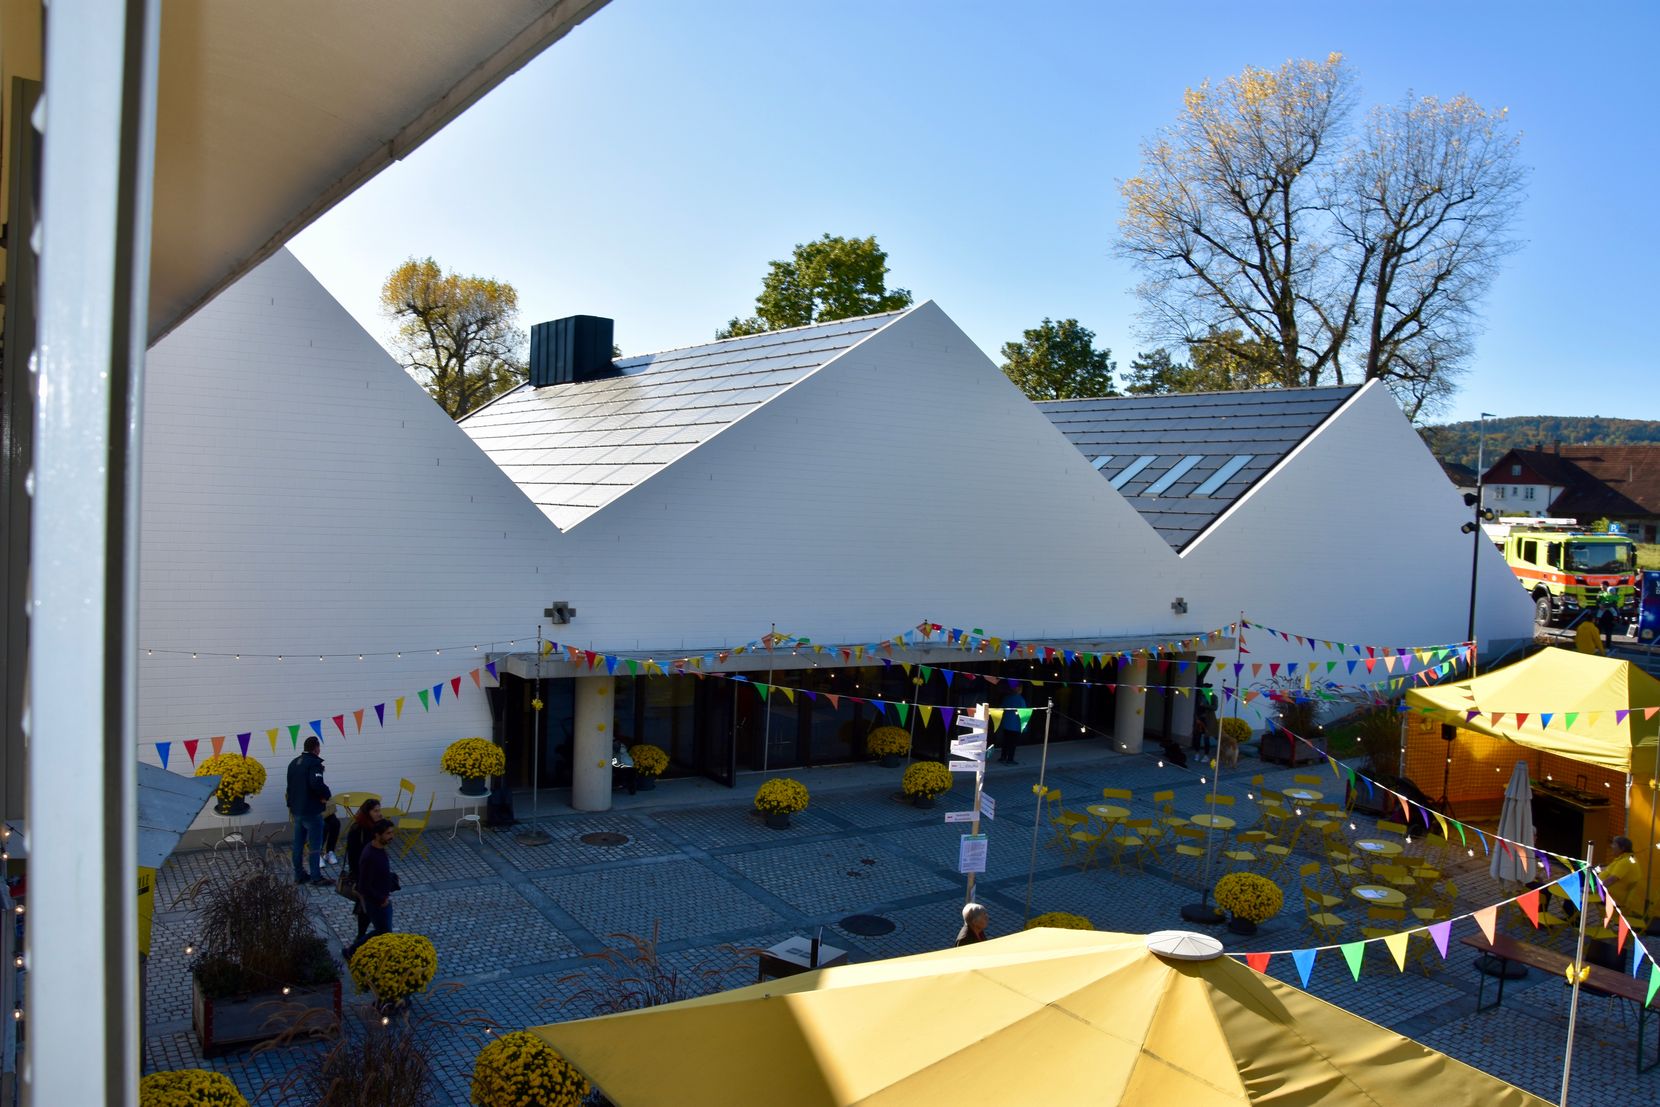 Der Neubau des bedeutenden Kulturgebäudes ist für Vereine und Veranstaltungen ein Meilenstein.